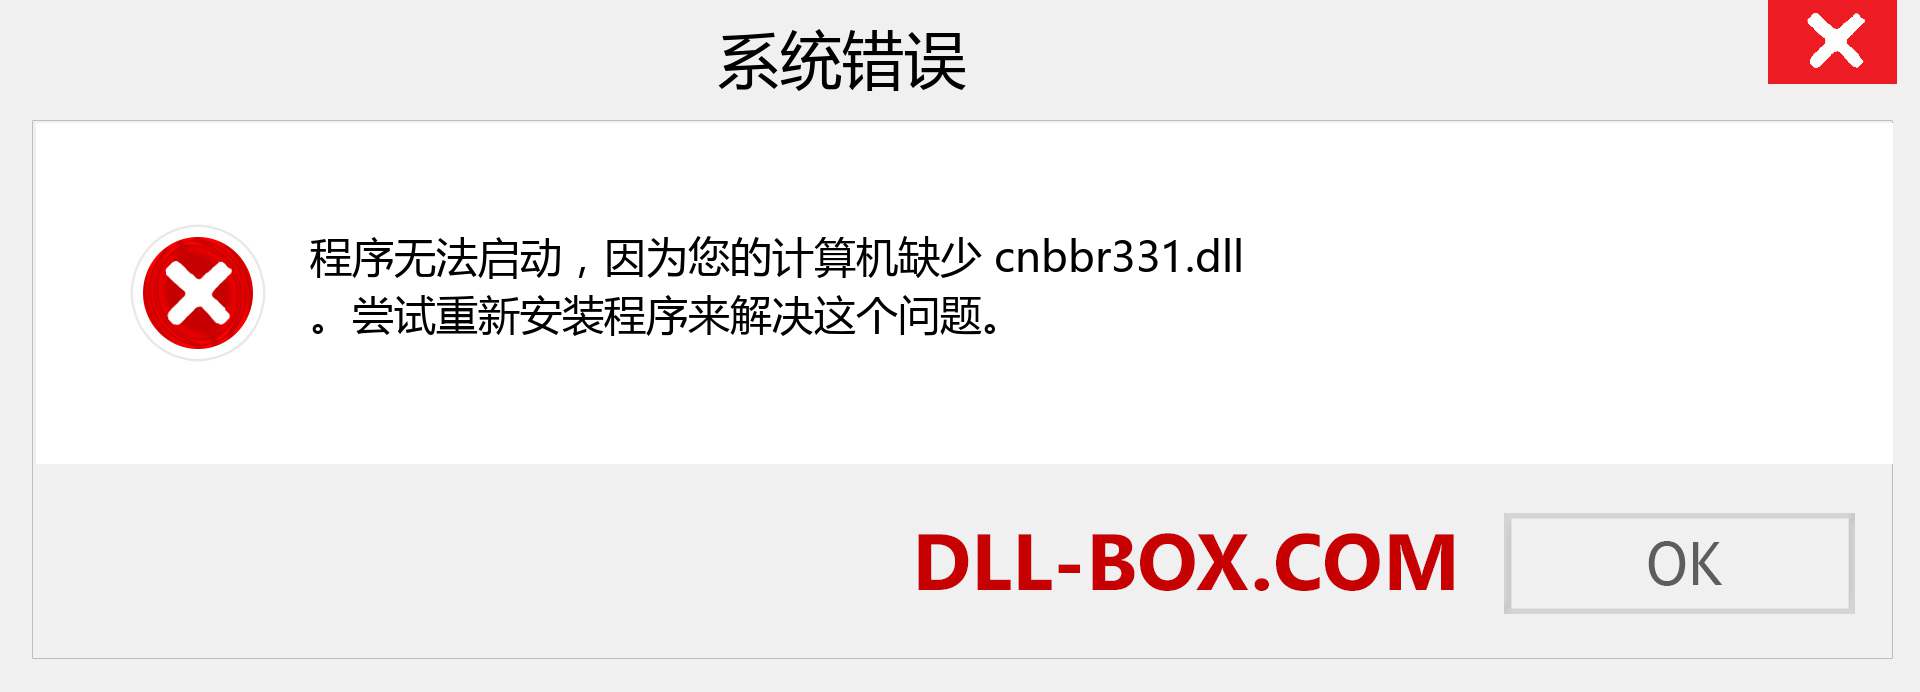 cnbbr331.dll 文件丢失？。 适用于 Windows 7、8、10 的下载 - 修复 Windows、照片、图像上的 cnbbr331 dll 丢失错误